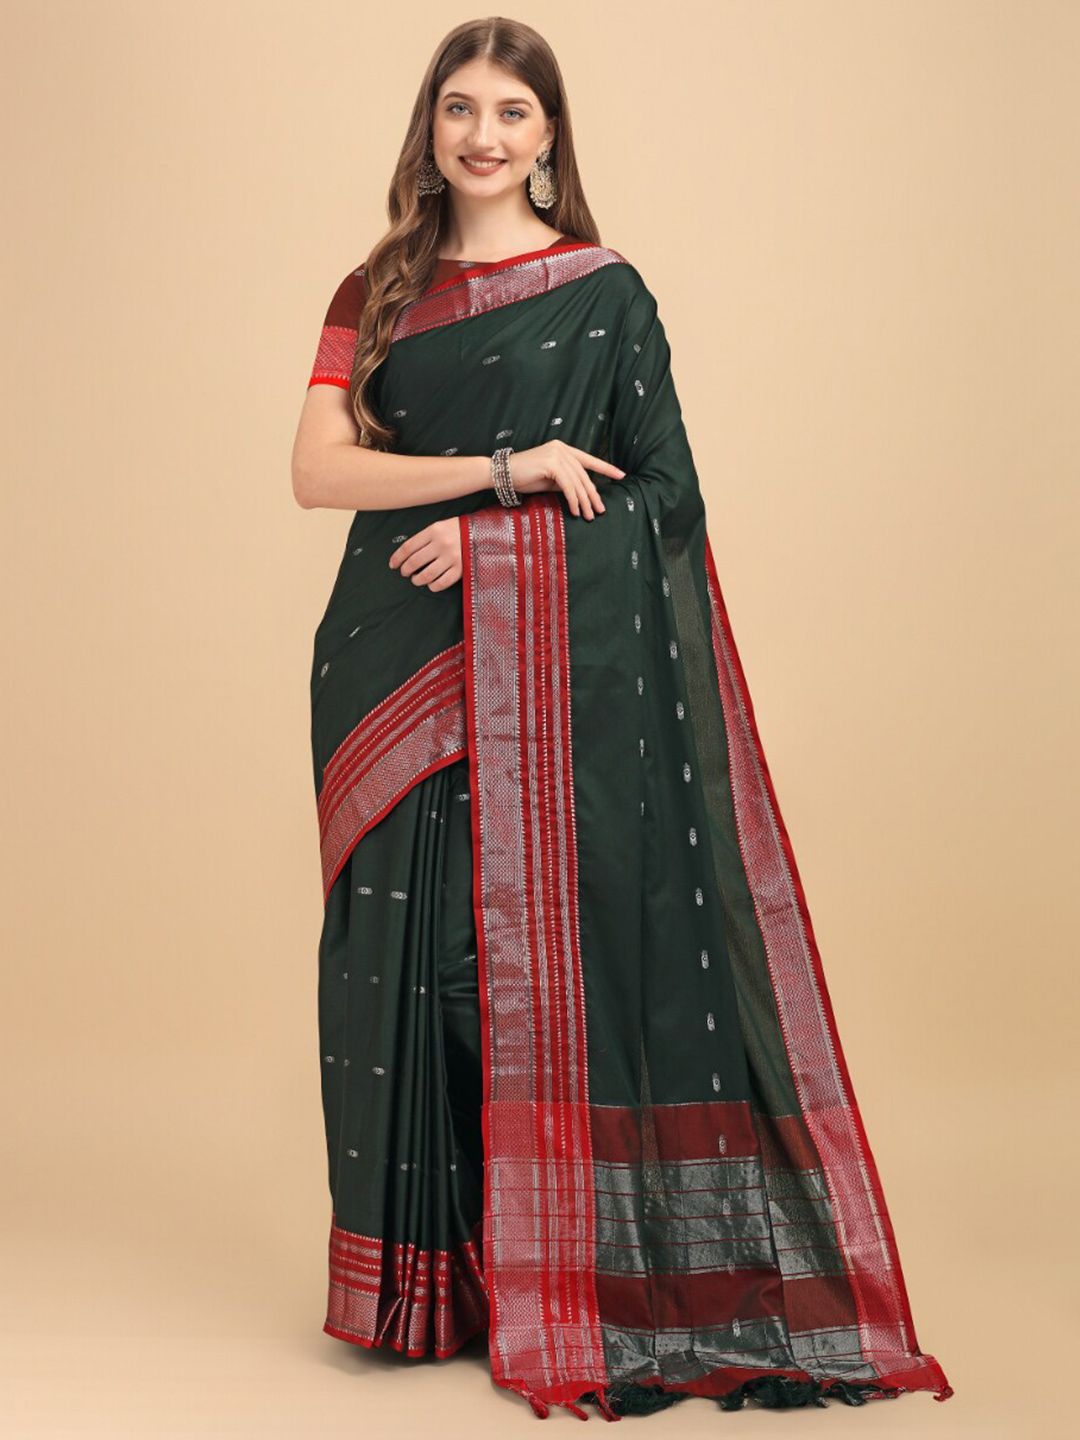 Jinax Green & Red Woven Design Zari Pure Silk Banarasi Saree Price in India